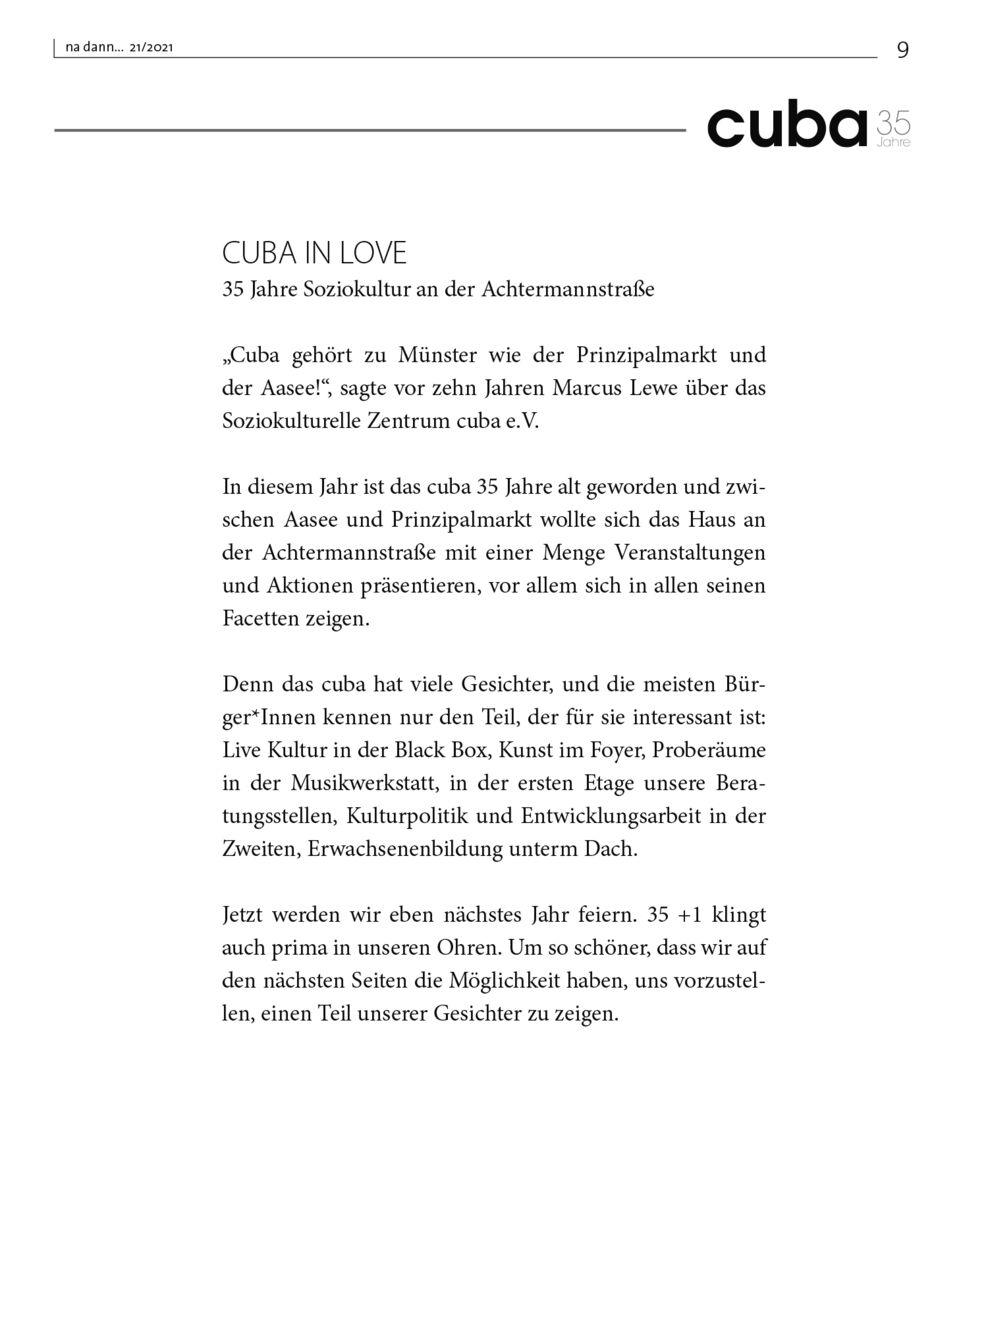 Galerie KW 21 – 35 Jahre CUBA IN LOVE Soziokultur an dr Achtermannstraße